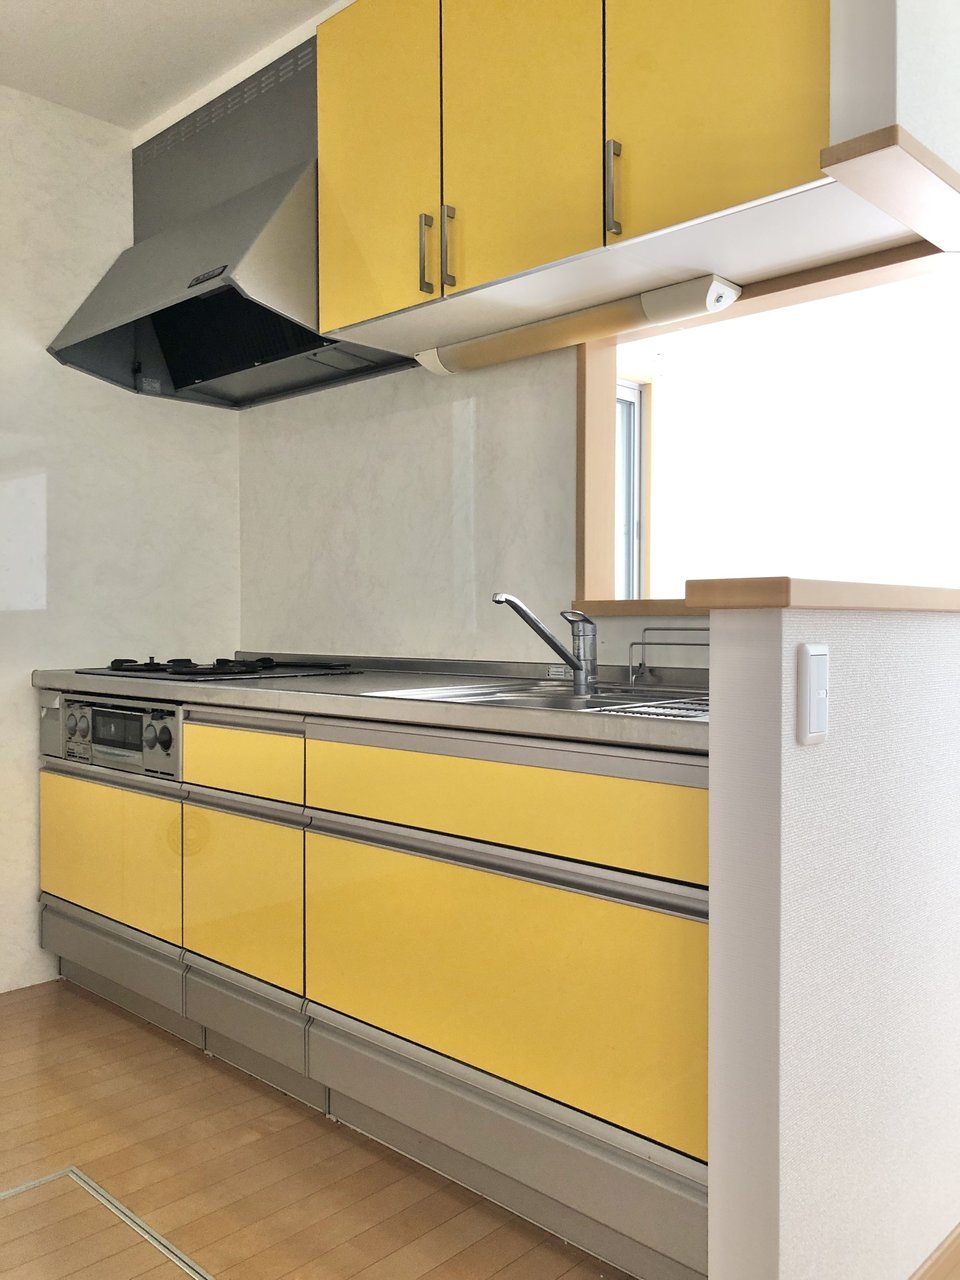 キッチンの内側は鮮やかな黄色。上下に収納たっぷりで、調理器具やお皿をきれいに整頓しておけそうです。